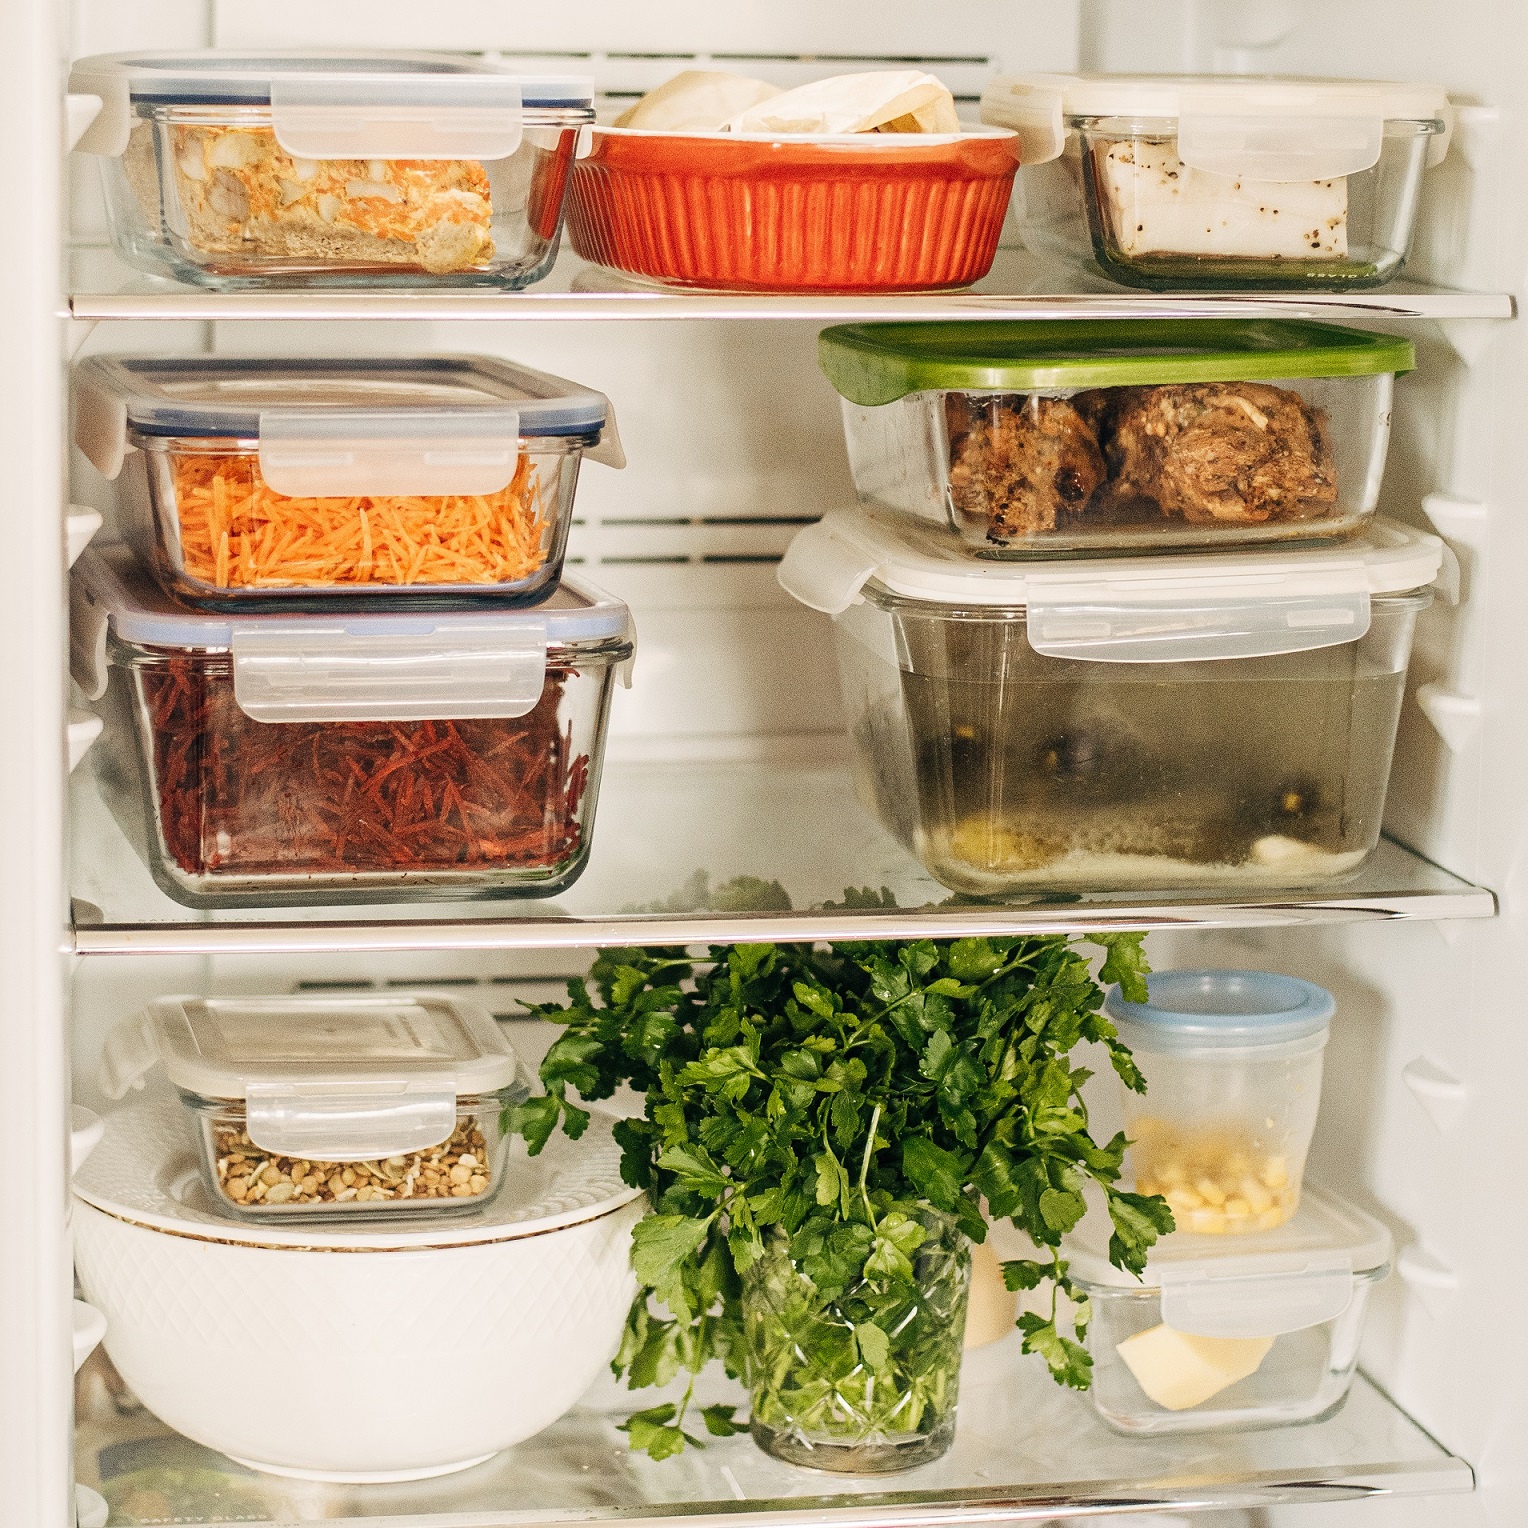 Świadome i przemyślane zakupy spożywcze oraz porządek w lodówce znacząco redukują marnowanie żywności w domu